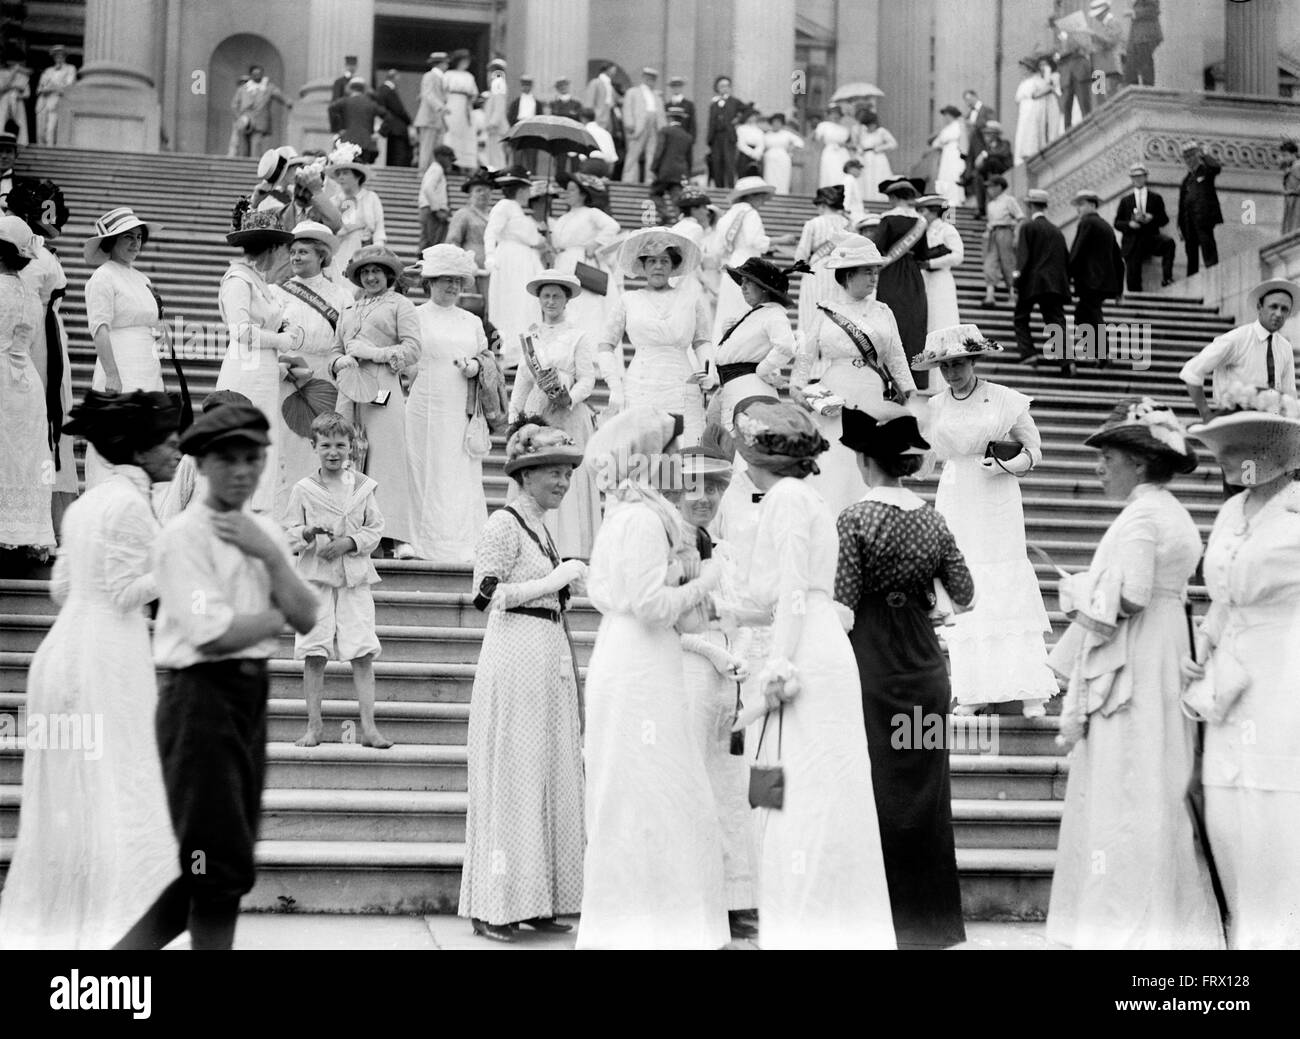 Les suffragettes sur les marches de la Capitol, Washington DC, USA en 1913 Banque D'Images